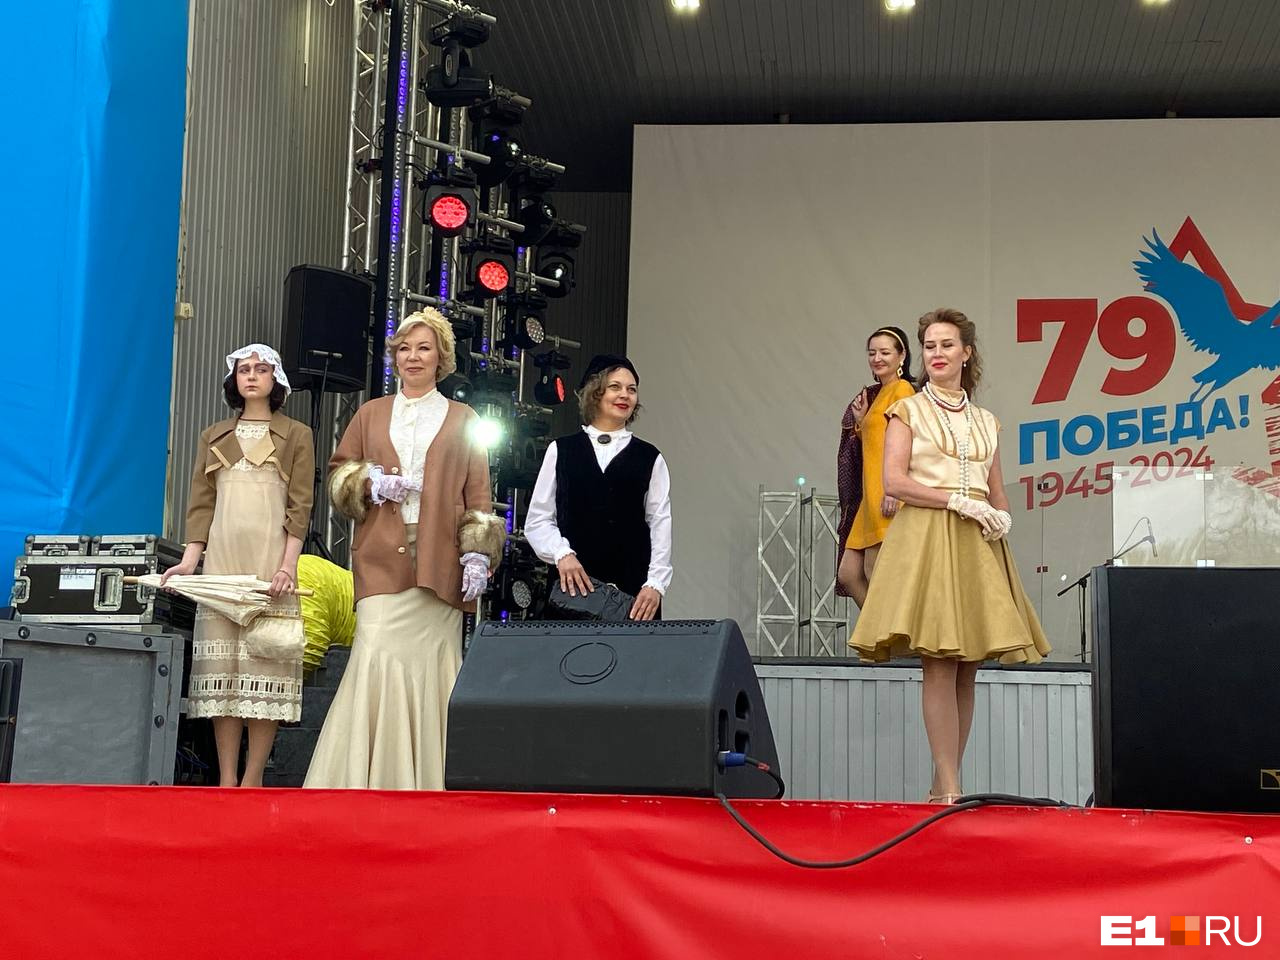 Клава Кока спела «Катюшу», а Юлия Михалкова рассказала про бабушку: онлайн про День Победы